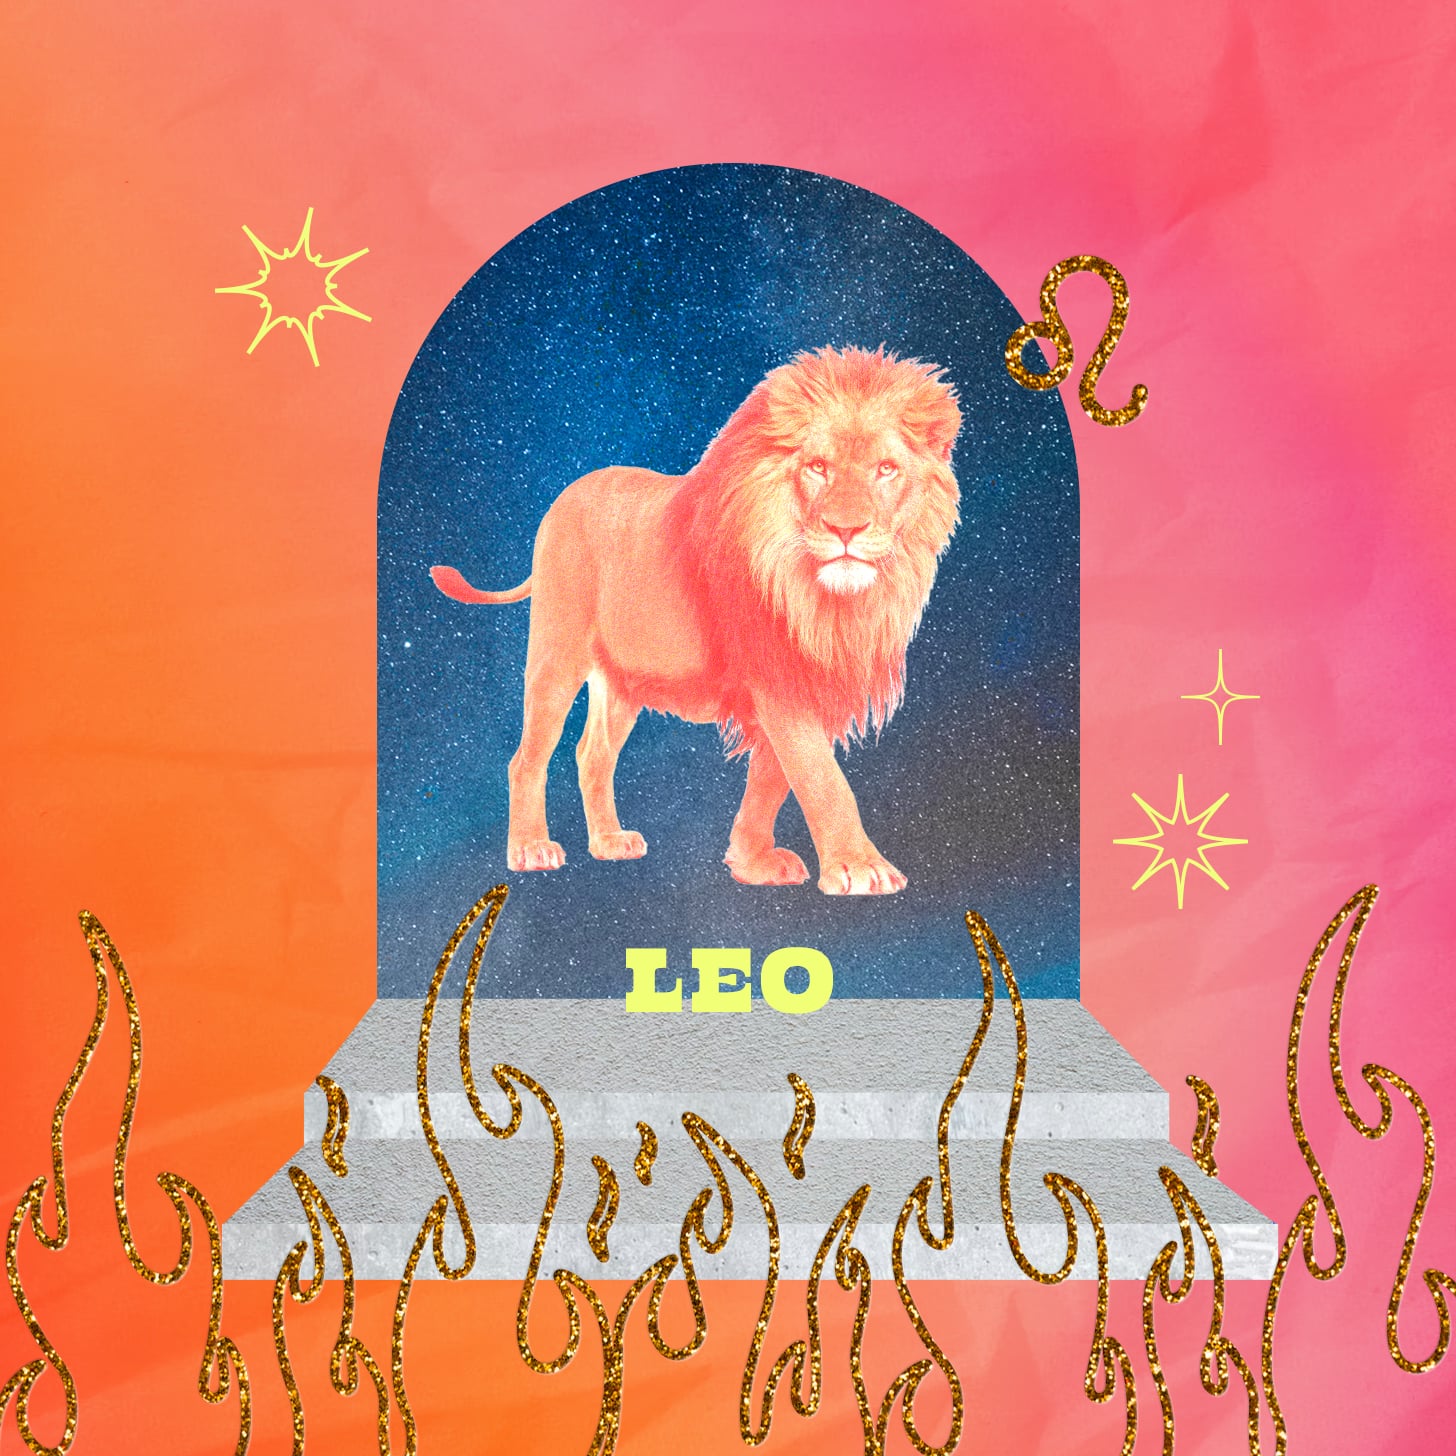 Leo weekly horoscope for May 22